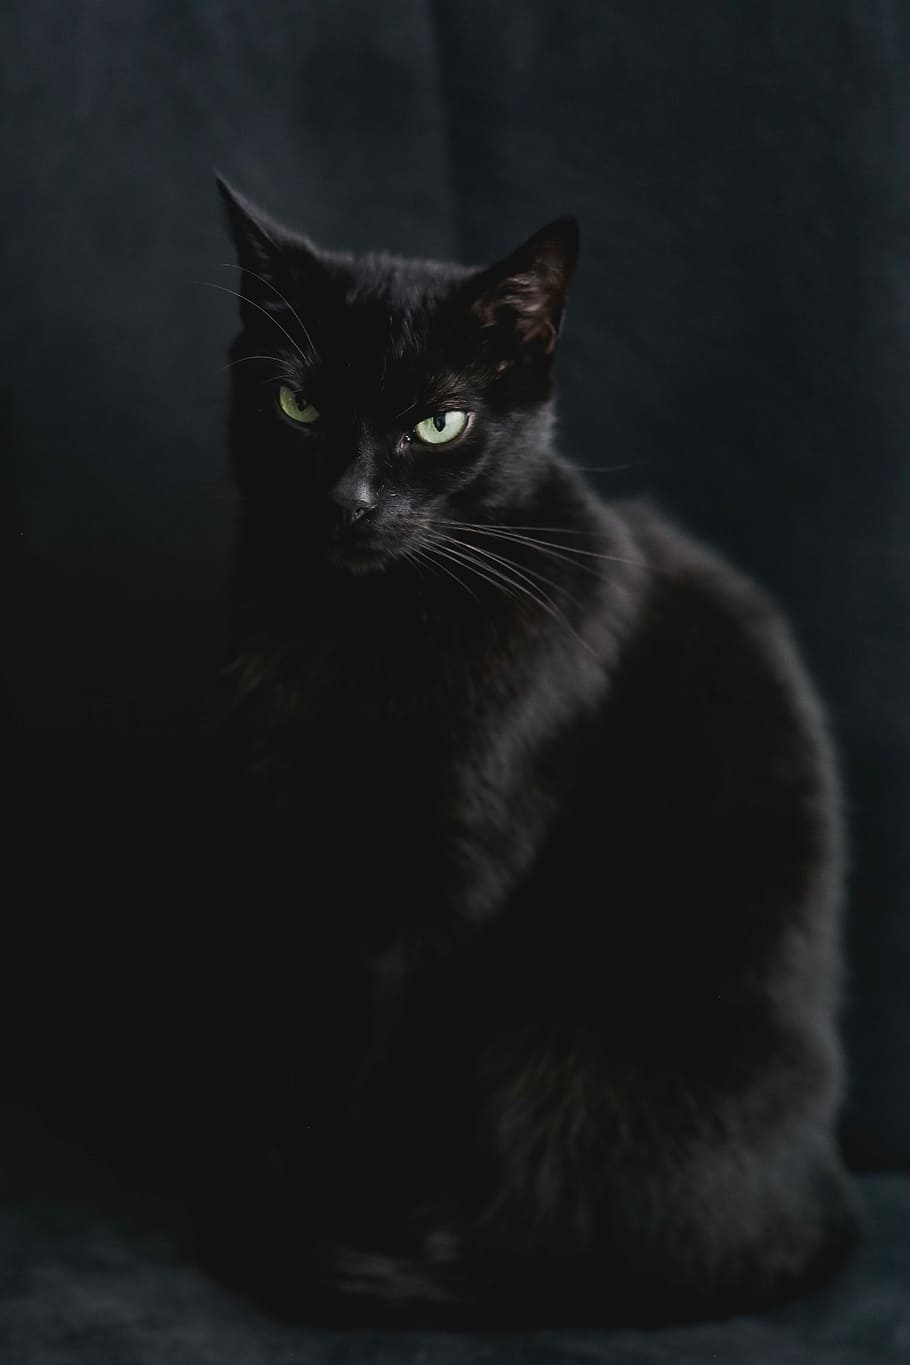 Black cat: Có phải bạn đang tìm kiếm những hình ảnh về con mèo đen đáng yêu và bí ẩn? Hãy đến với hình ảnh này - một chú mèo đen đáng yêu và cực kỳ nghịch ngợm. Với vẻ ngoài huyền bí và thần bí của mình, con mèo này chắc chắn sẽ khiến bạn hài lòng và thỏa mãn đam mê tìm kiếm những hình ảnh độc đáo.